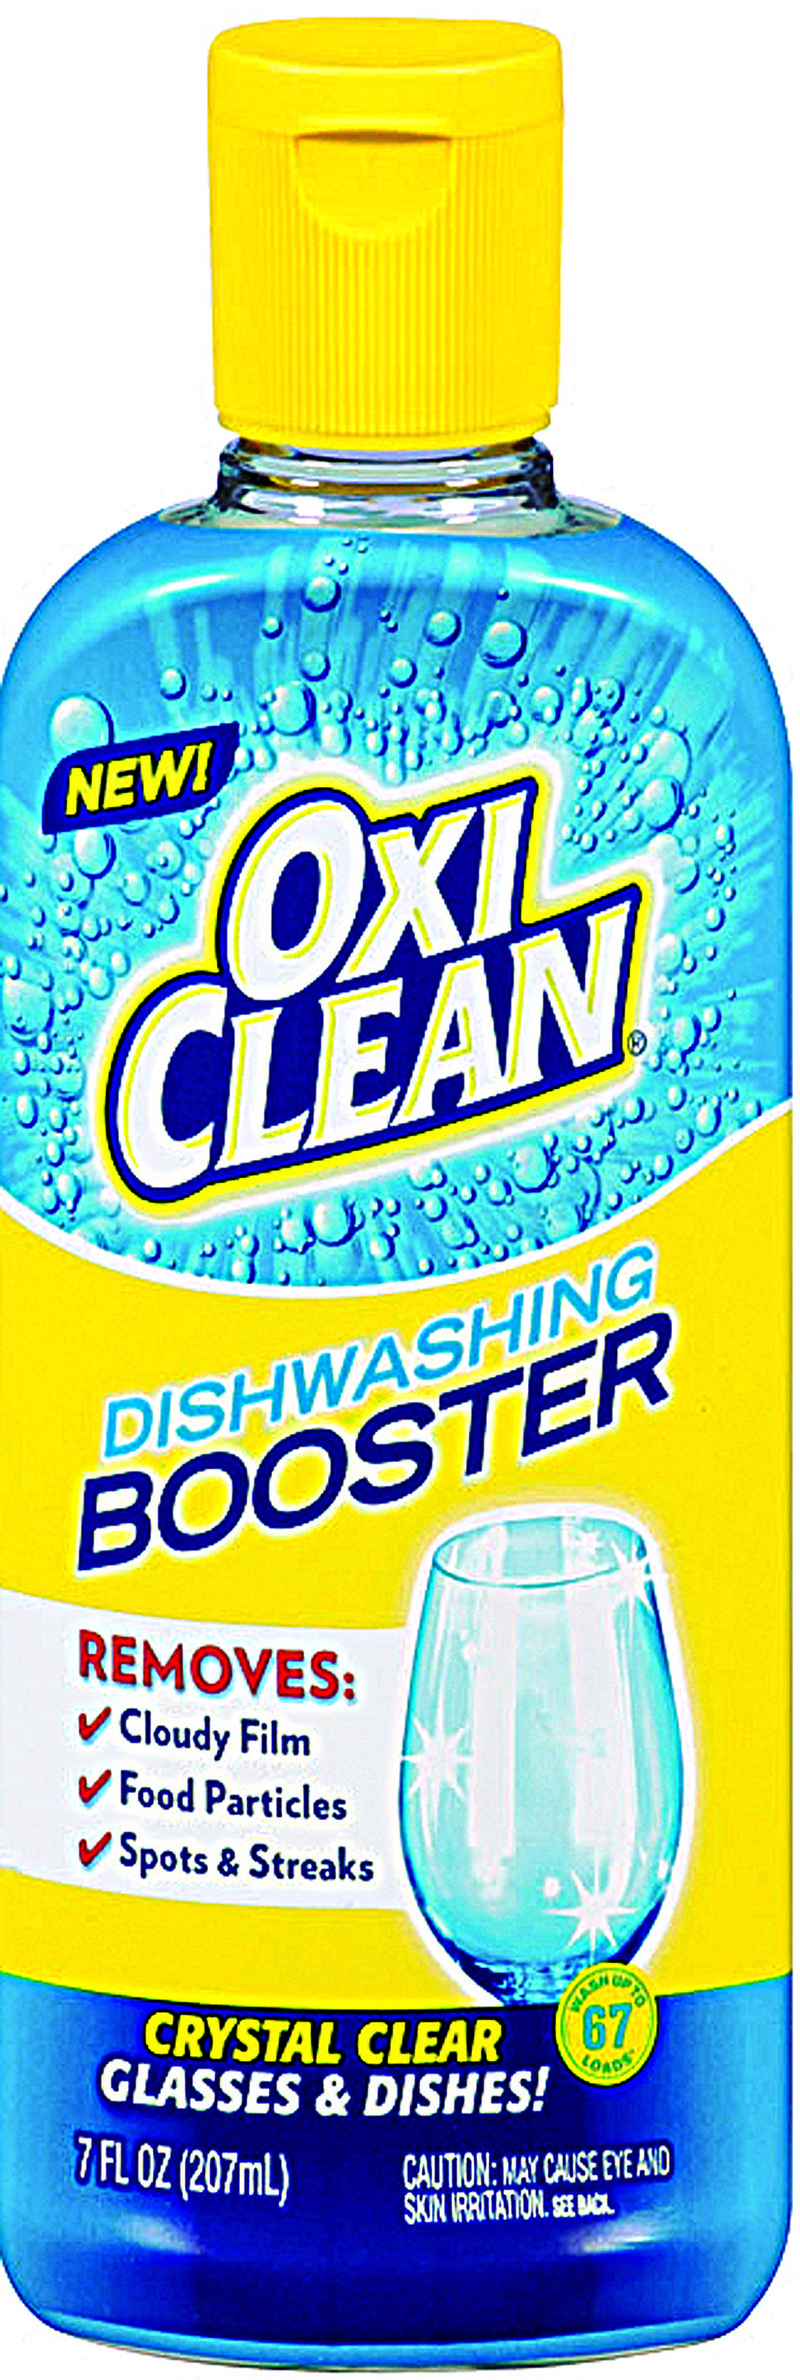 OxiClean Dishwashing Booster 